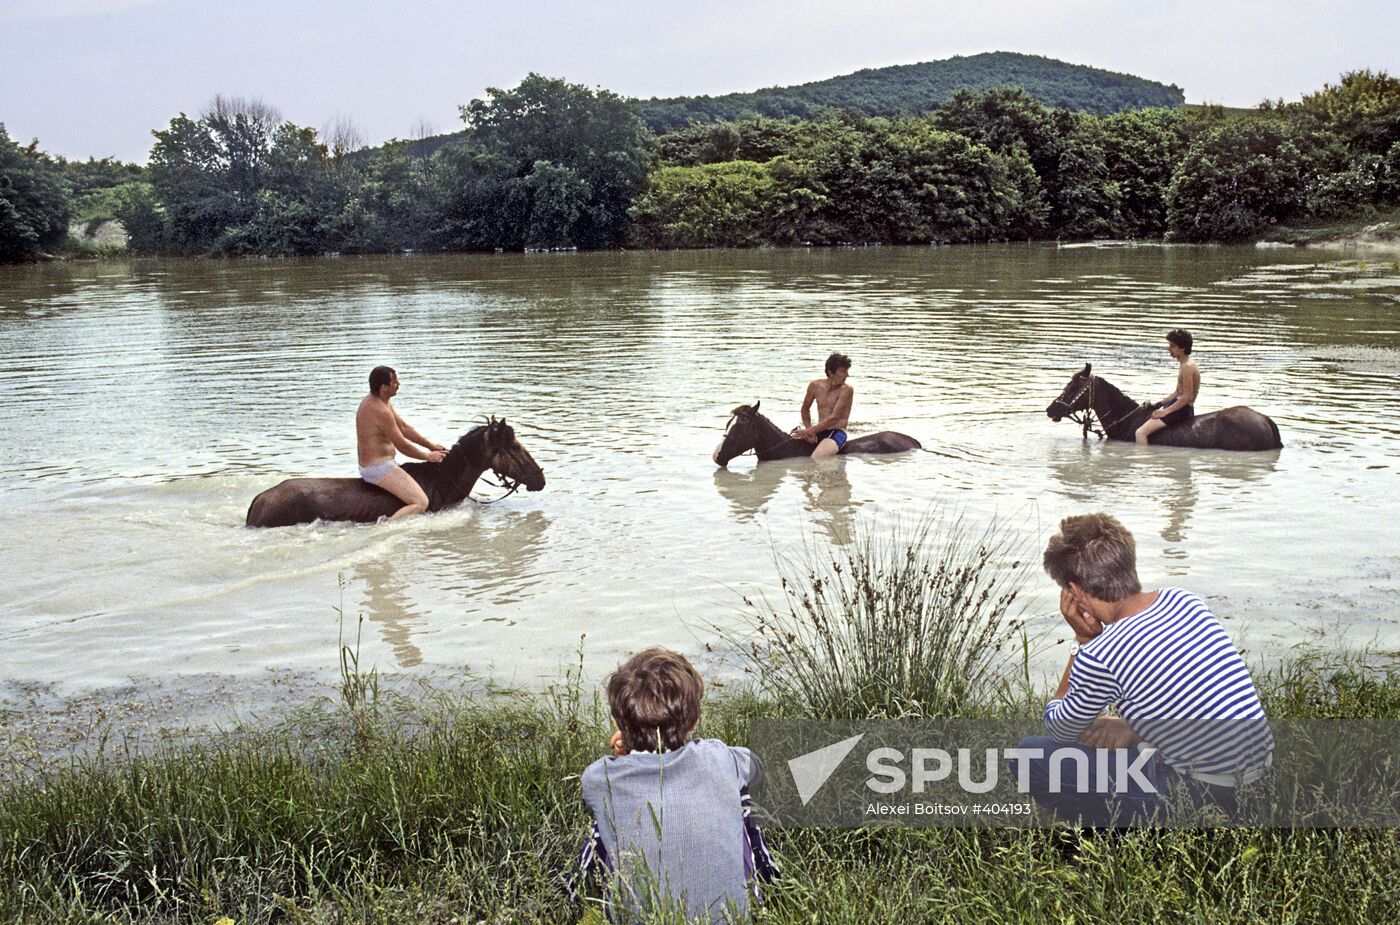 Horse bathing